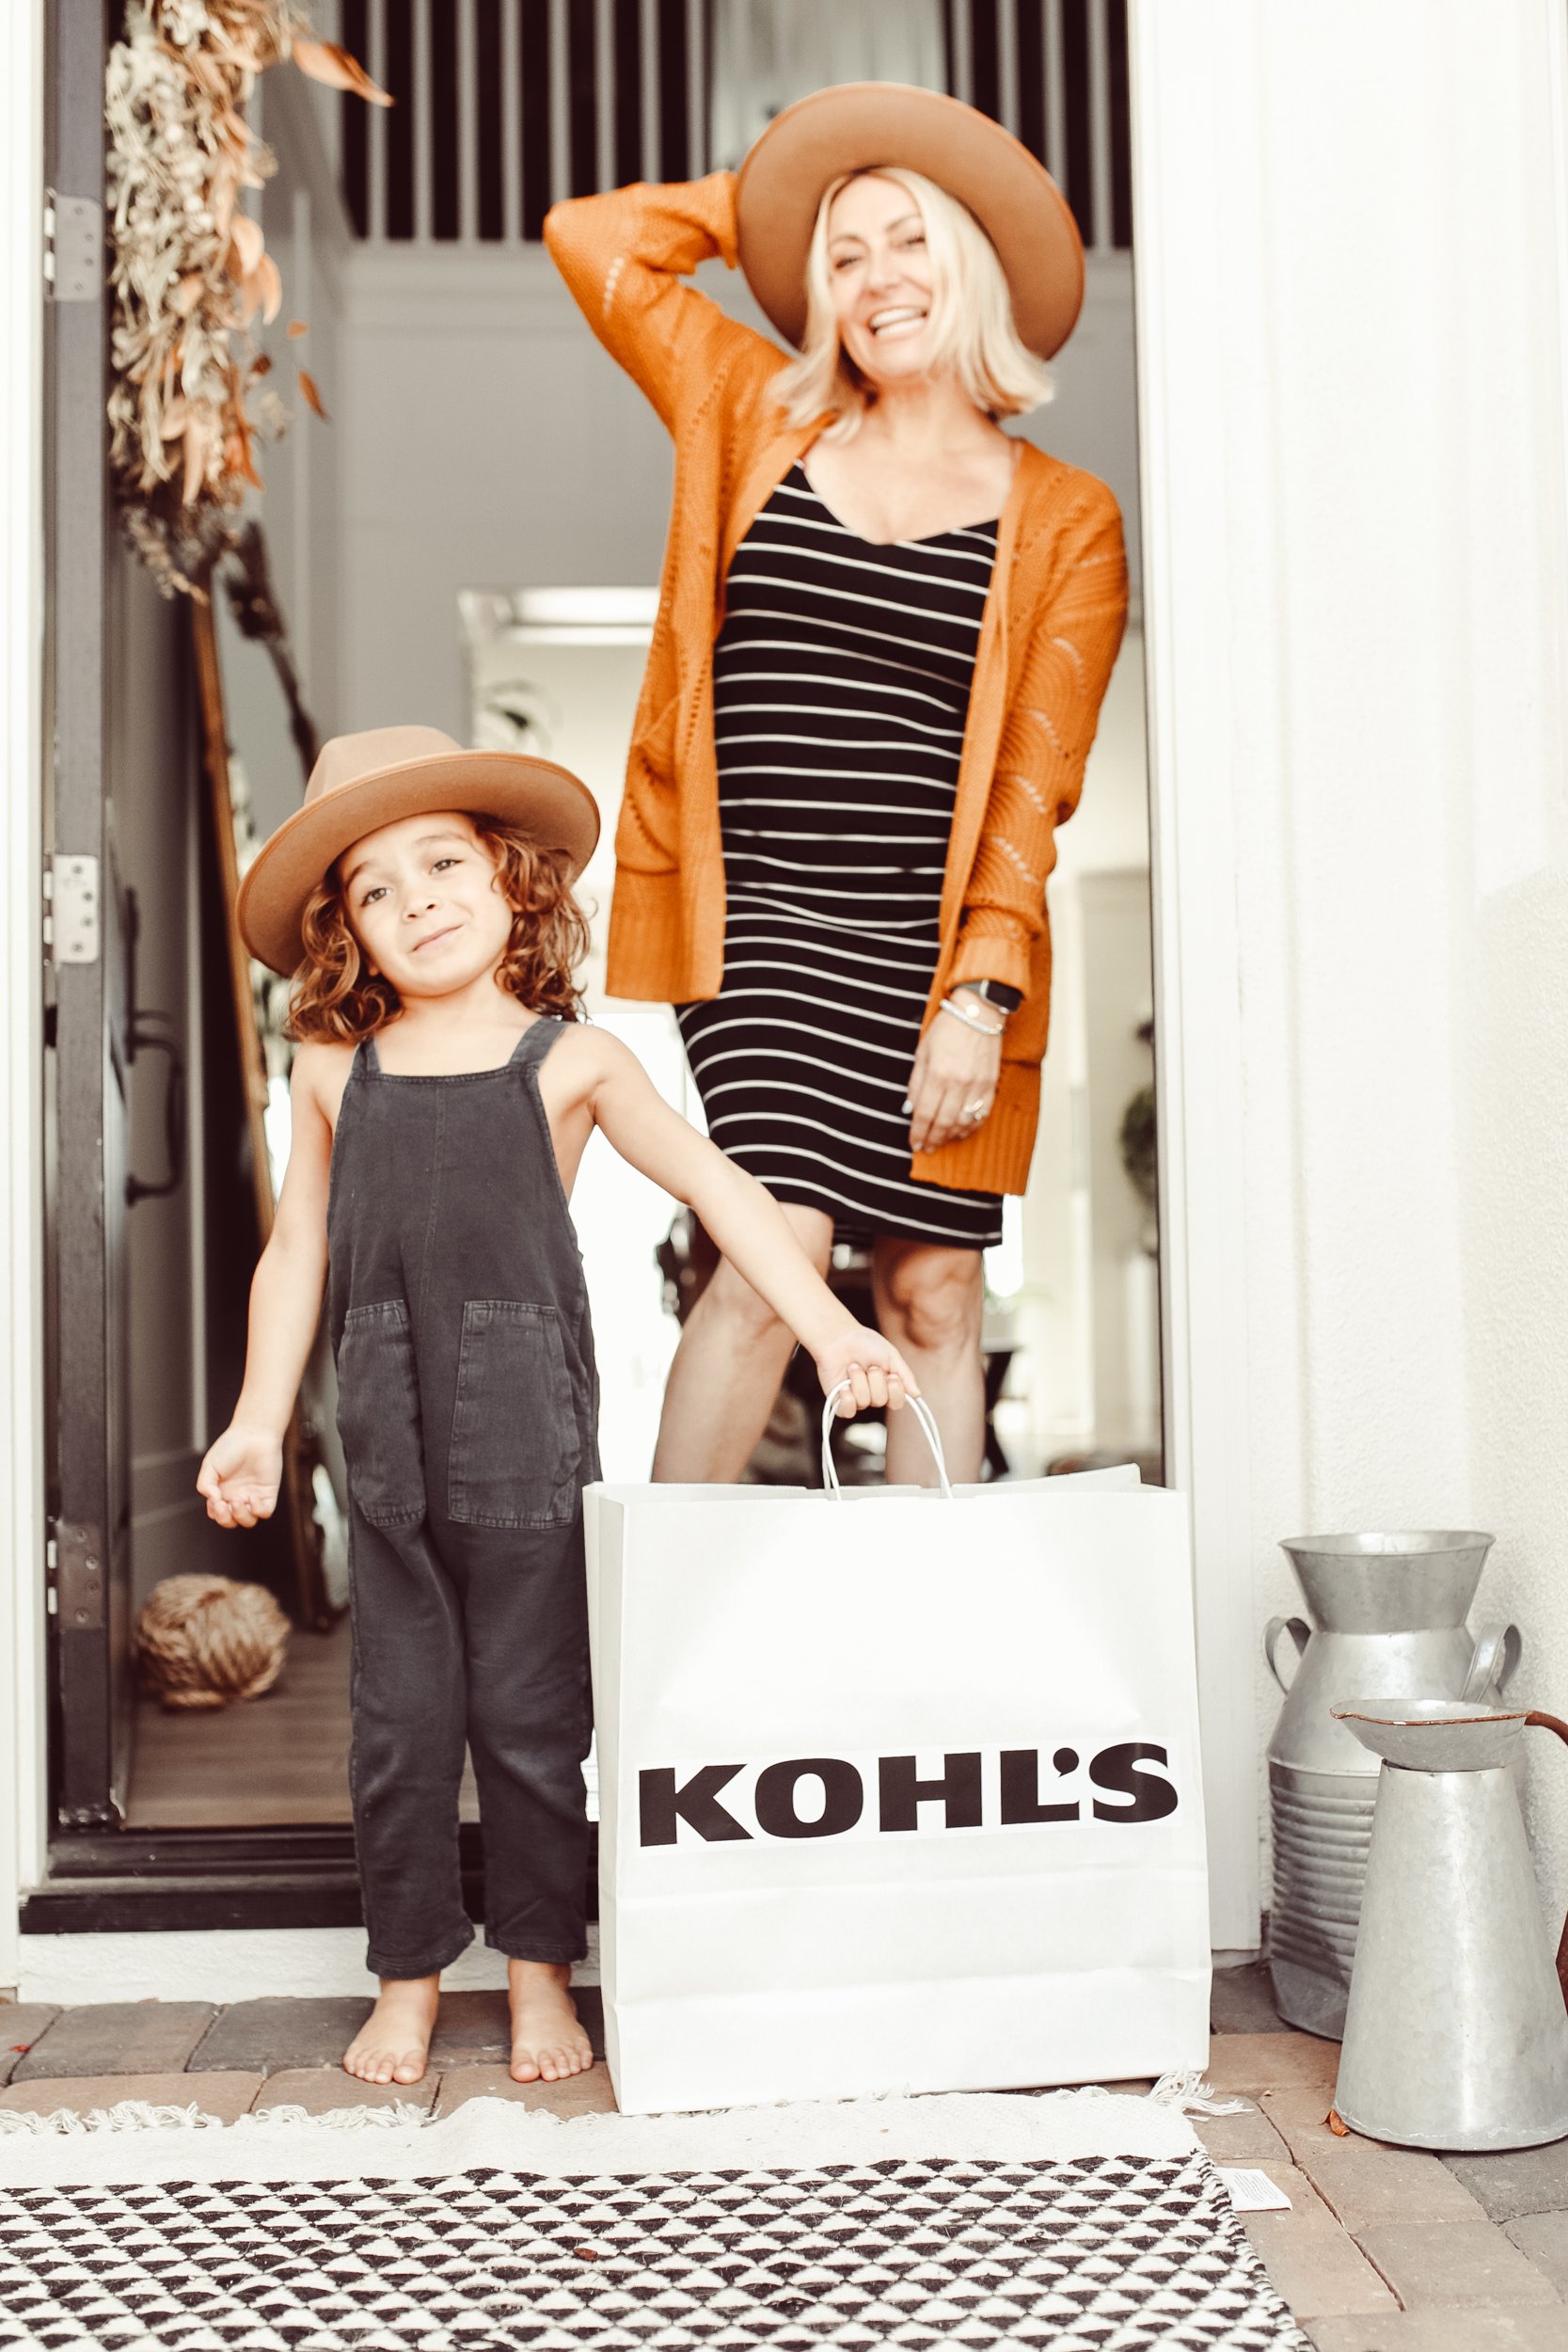 Kohls Summer Styles - City Girl Gone Mom